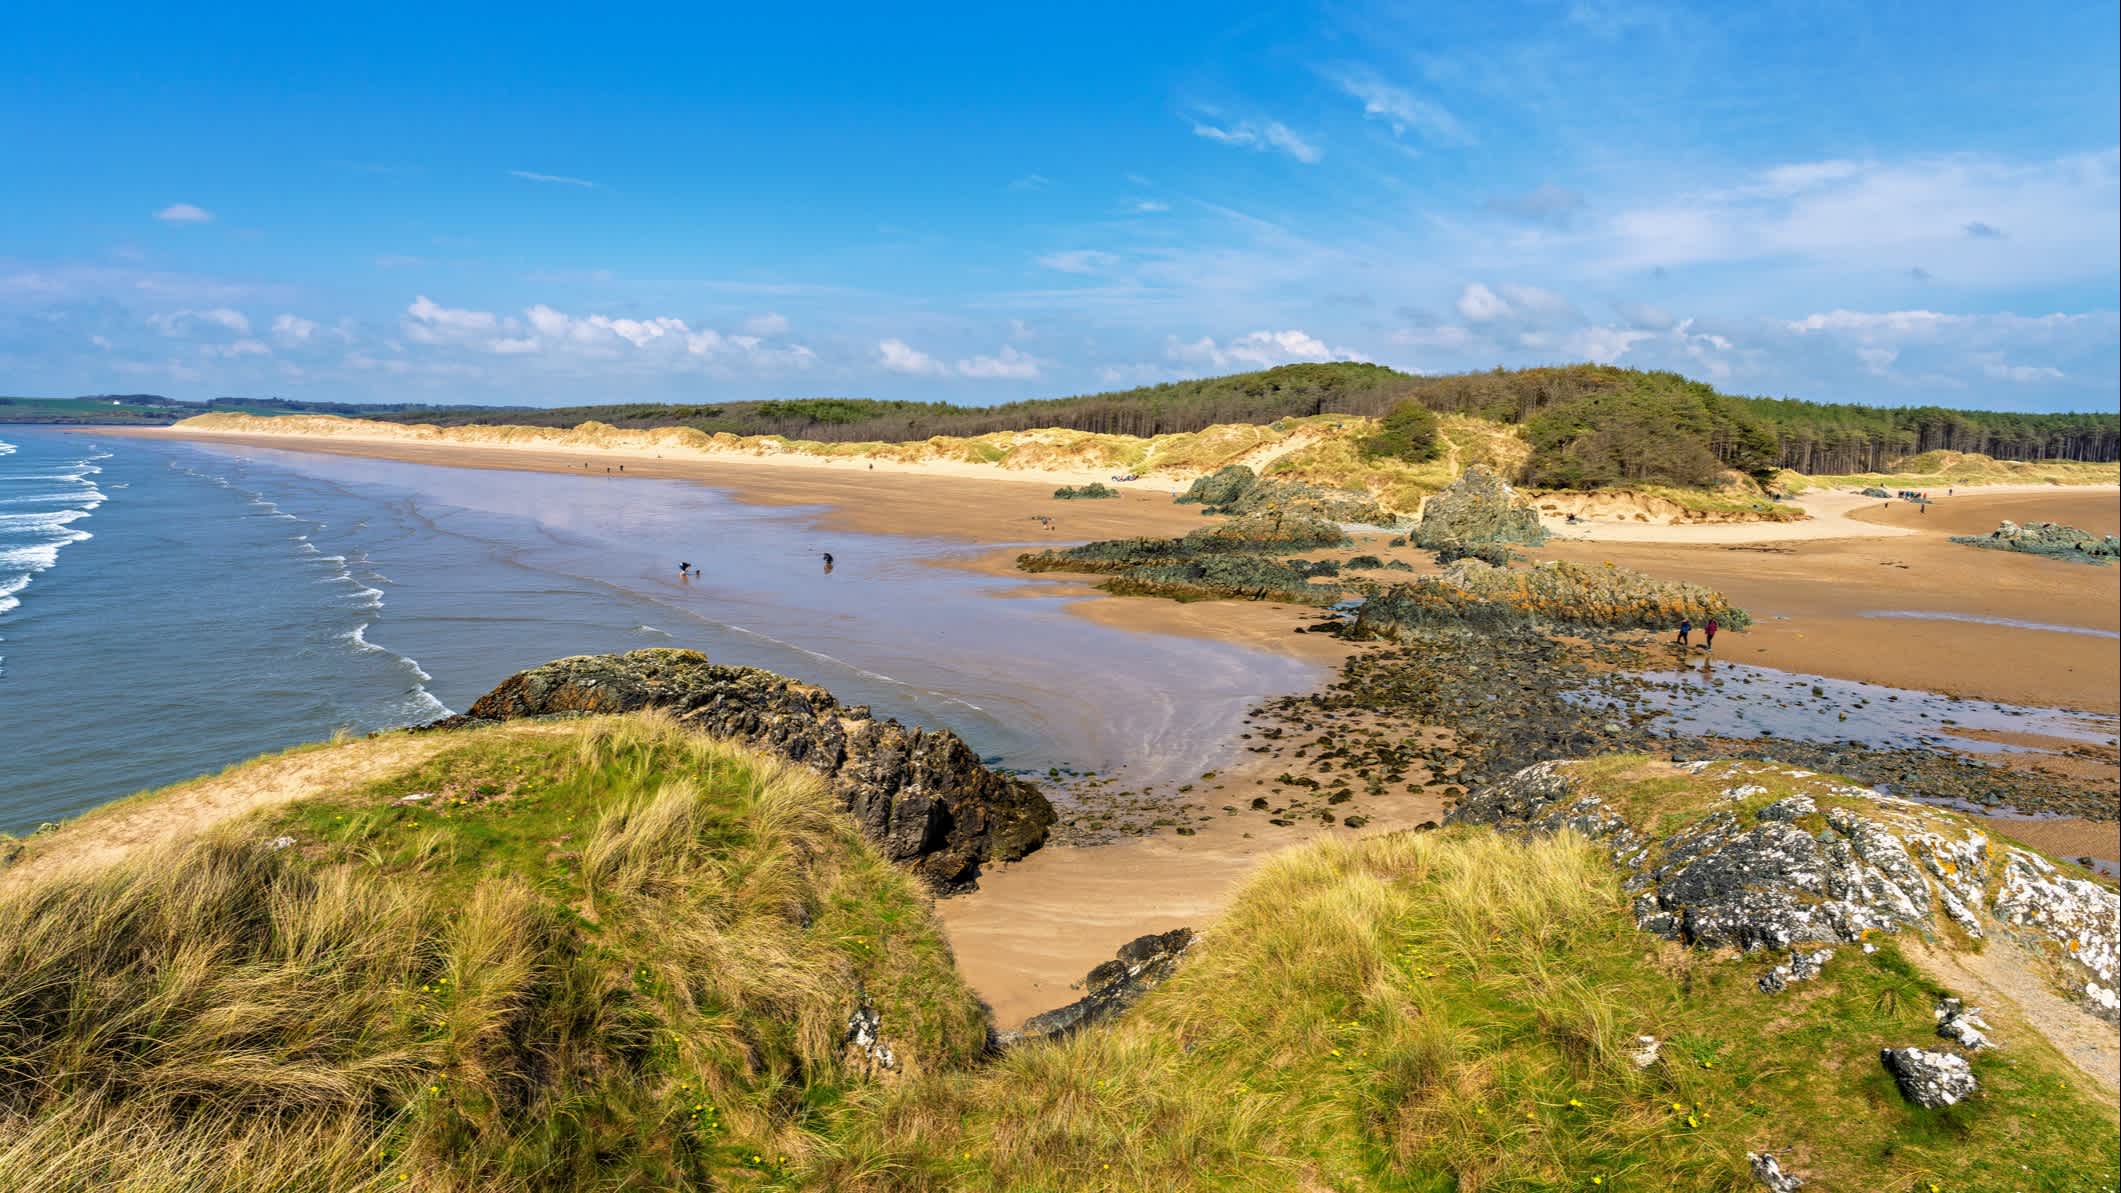 Das Panorama des Strandes von Newborough, Anglesey, Nordwales, Großbritannien.